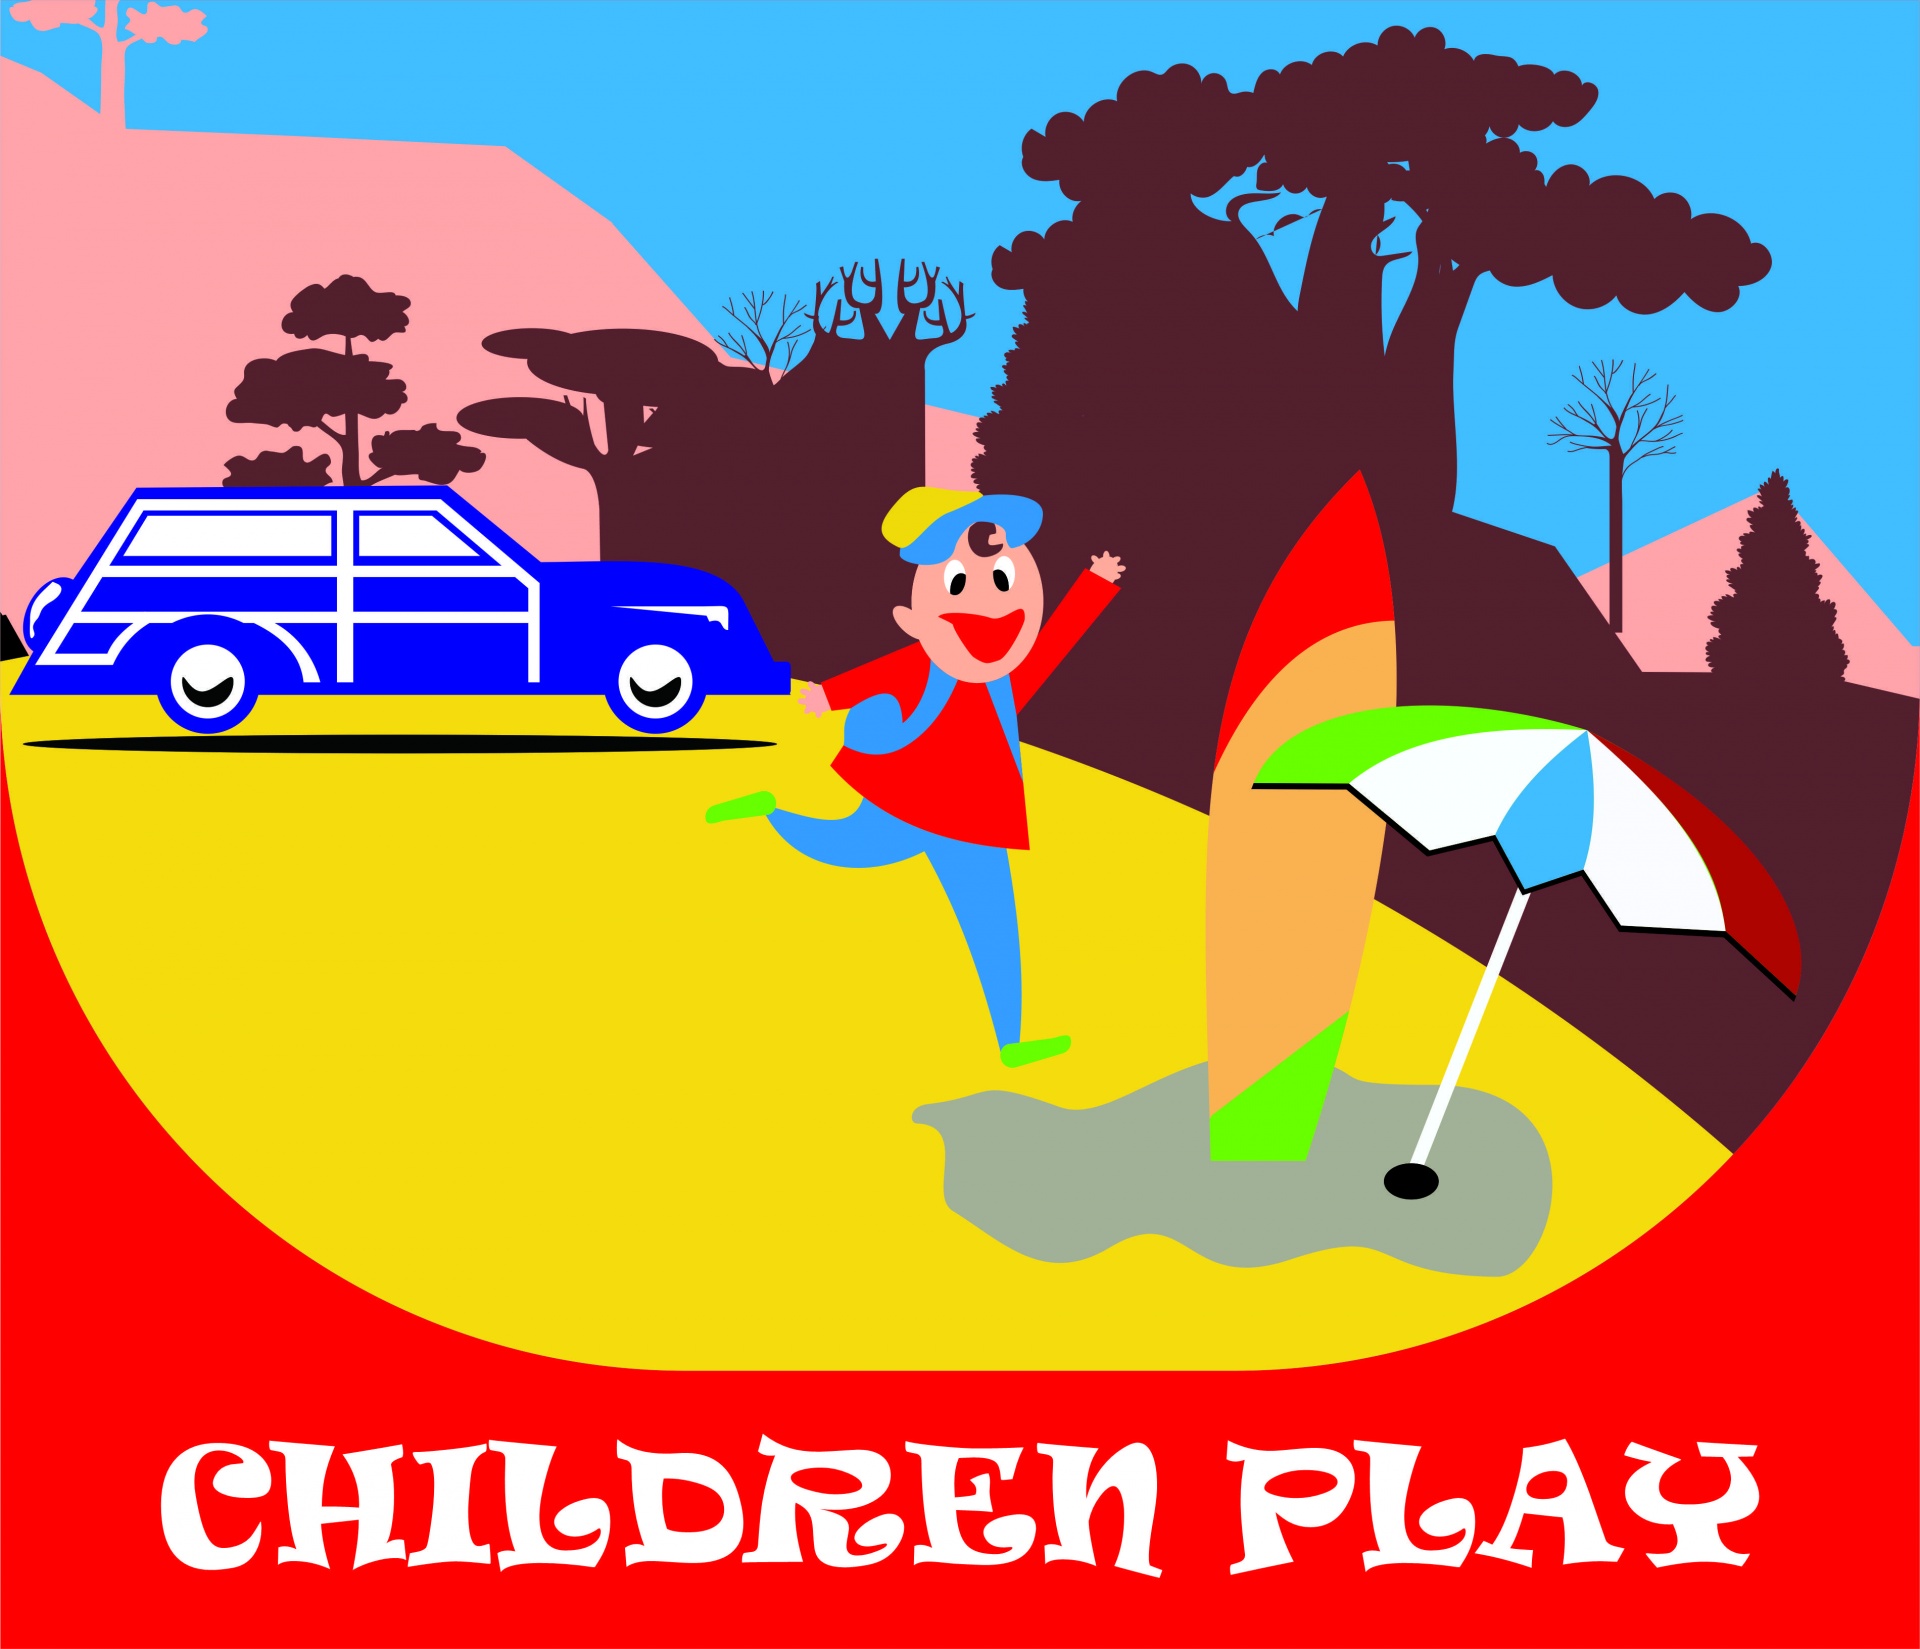 Children Play